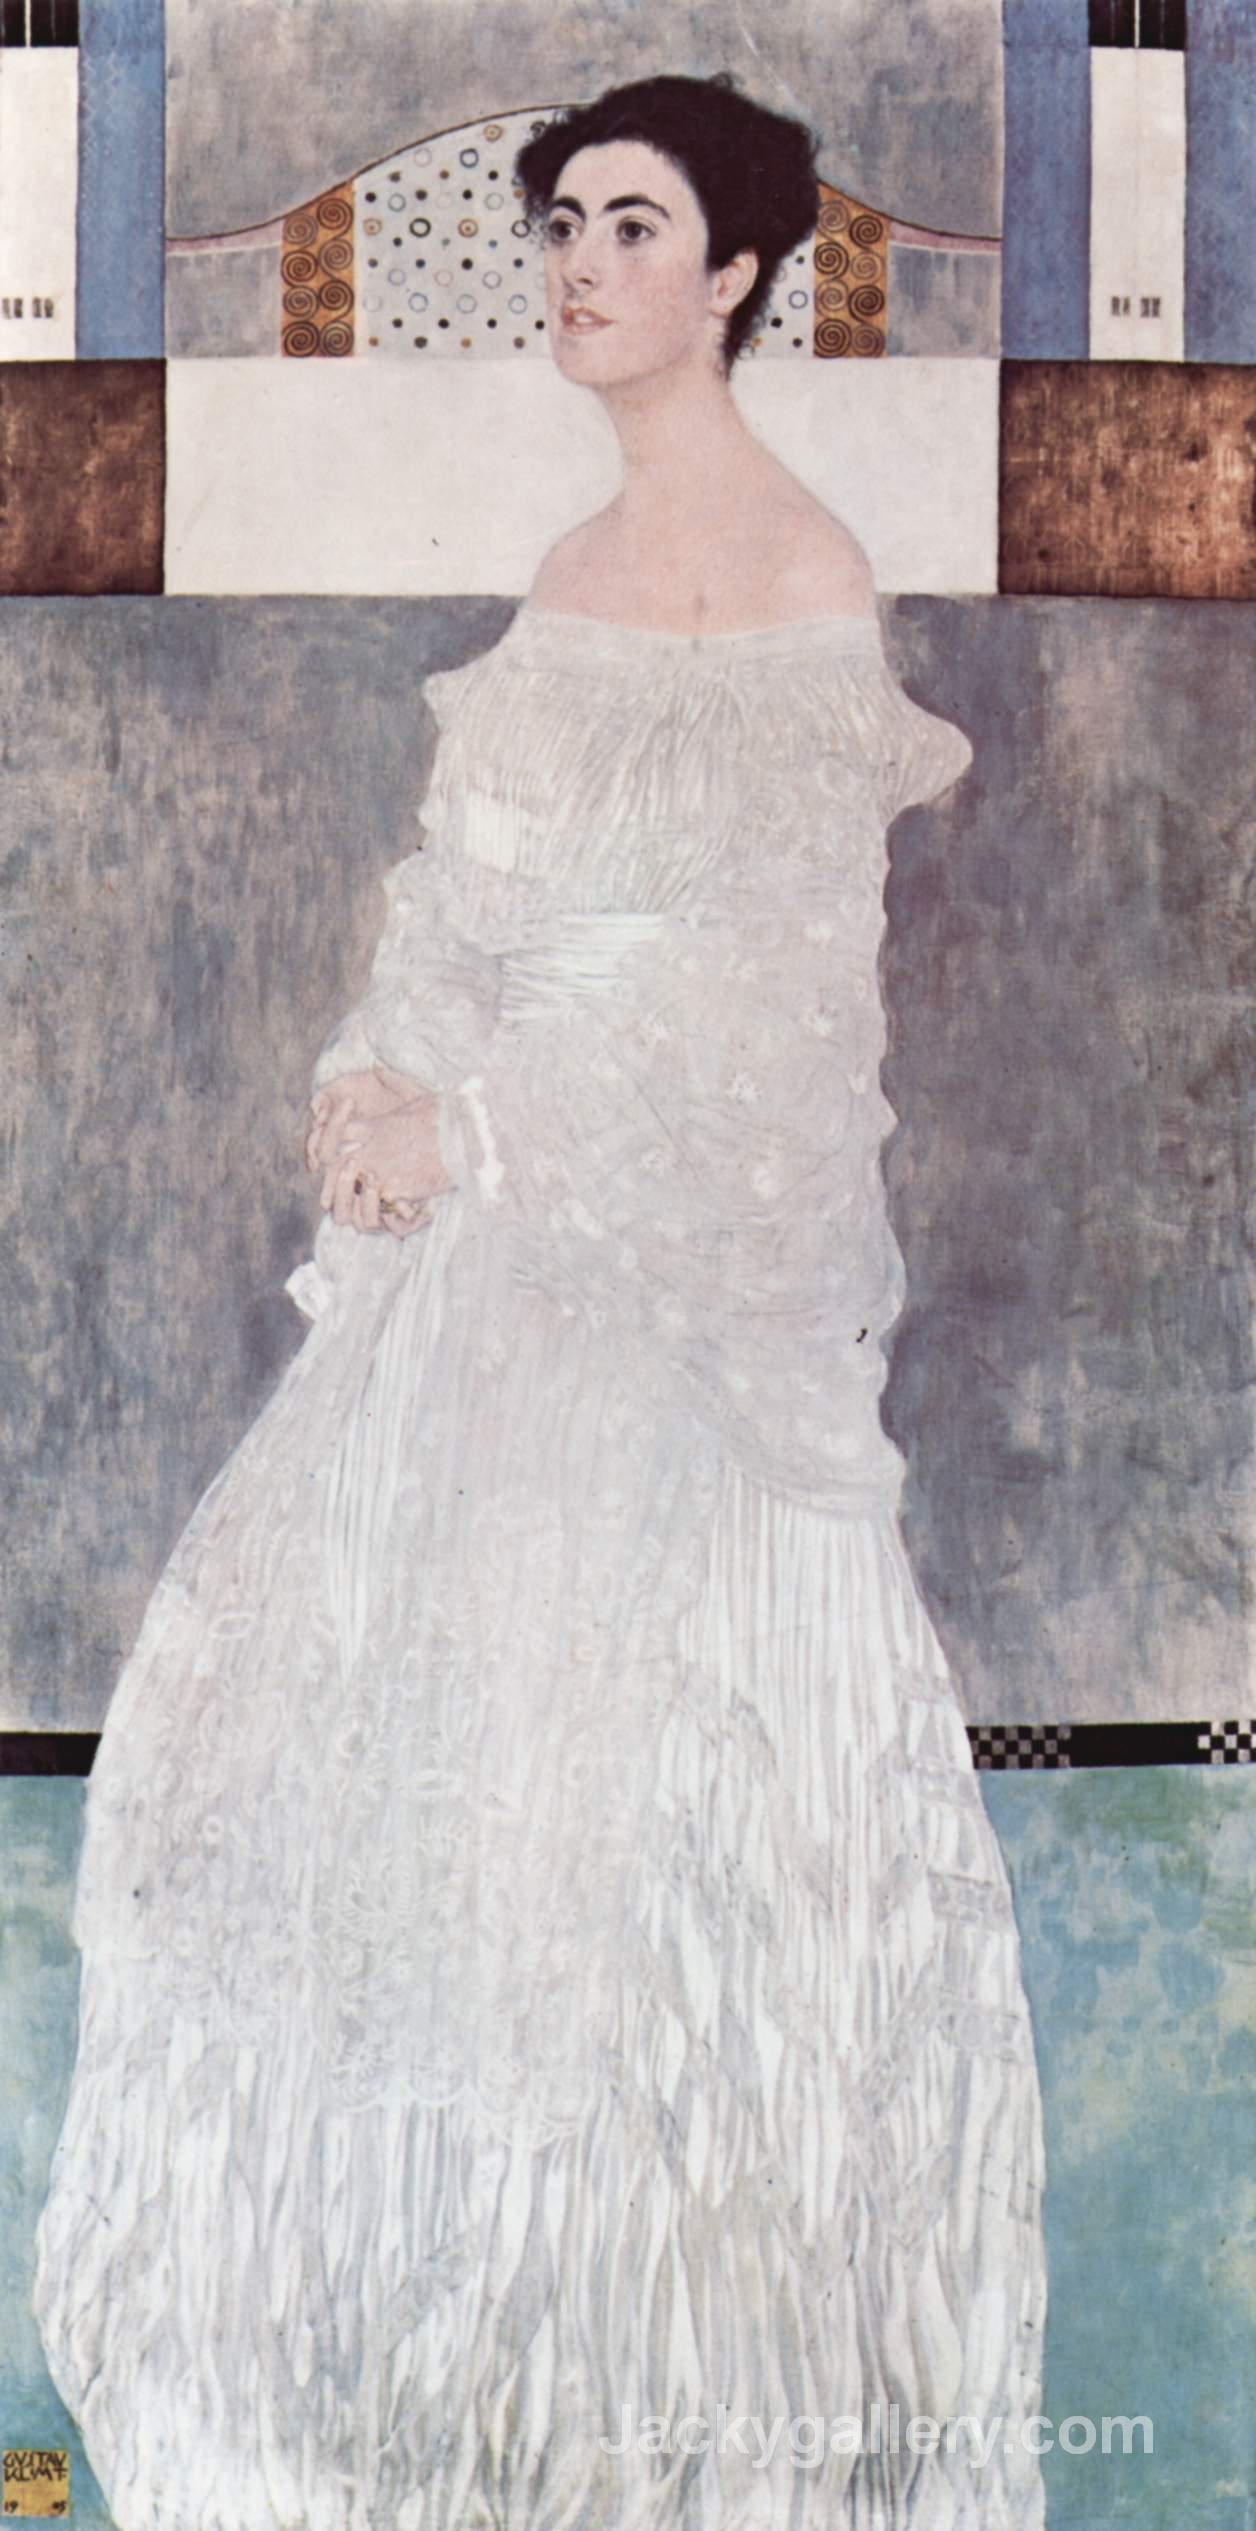 Portrait Of Margaret Stonborough-Wittgenstein by Gustav Klimt paintings reproduction